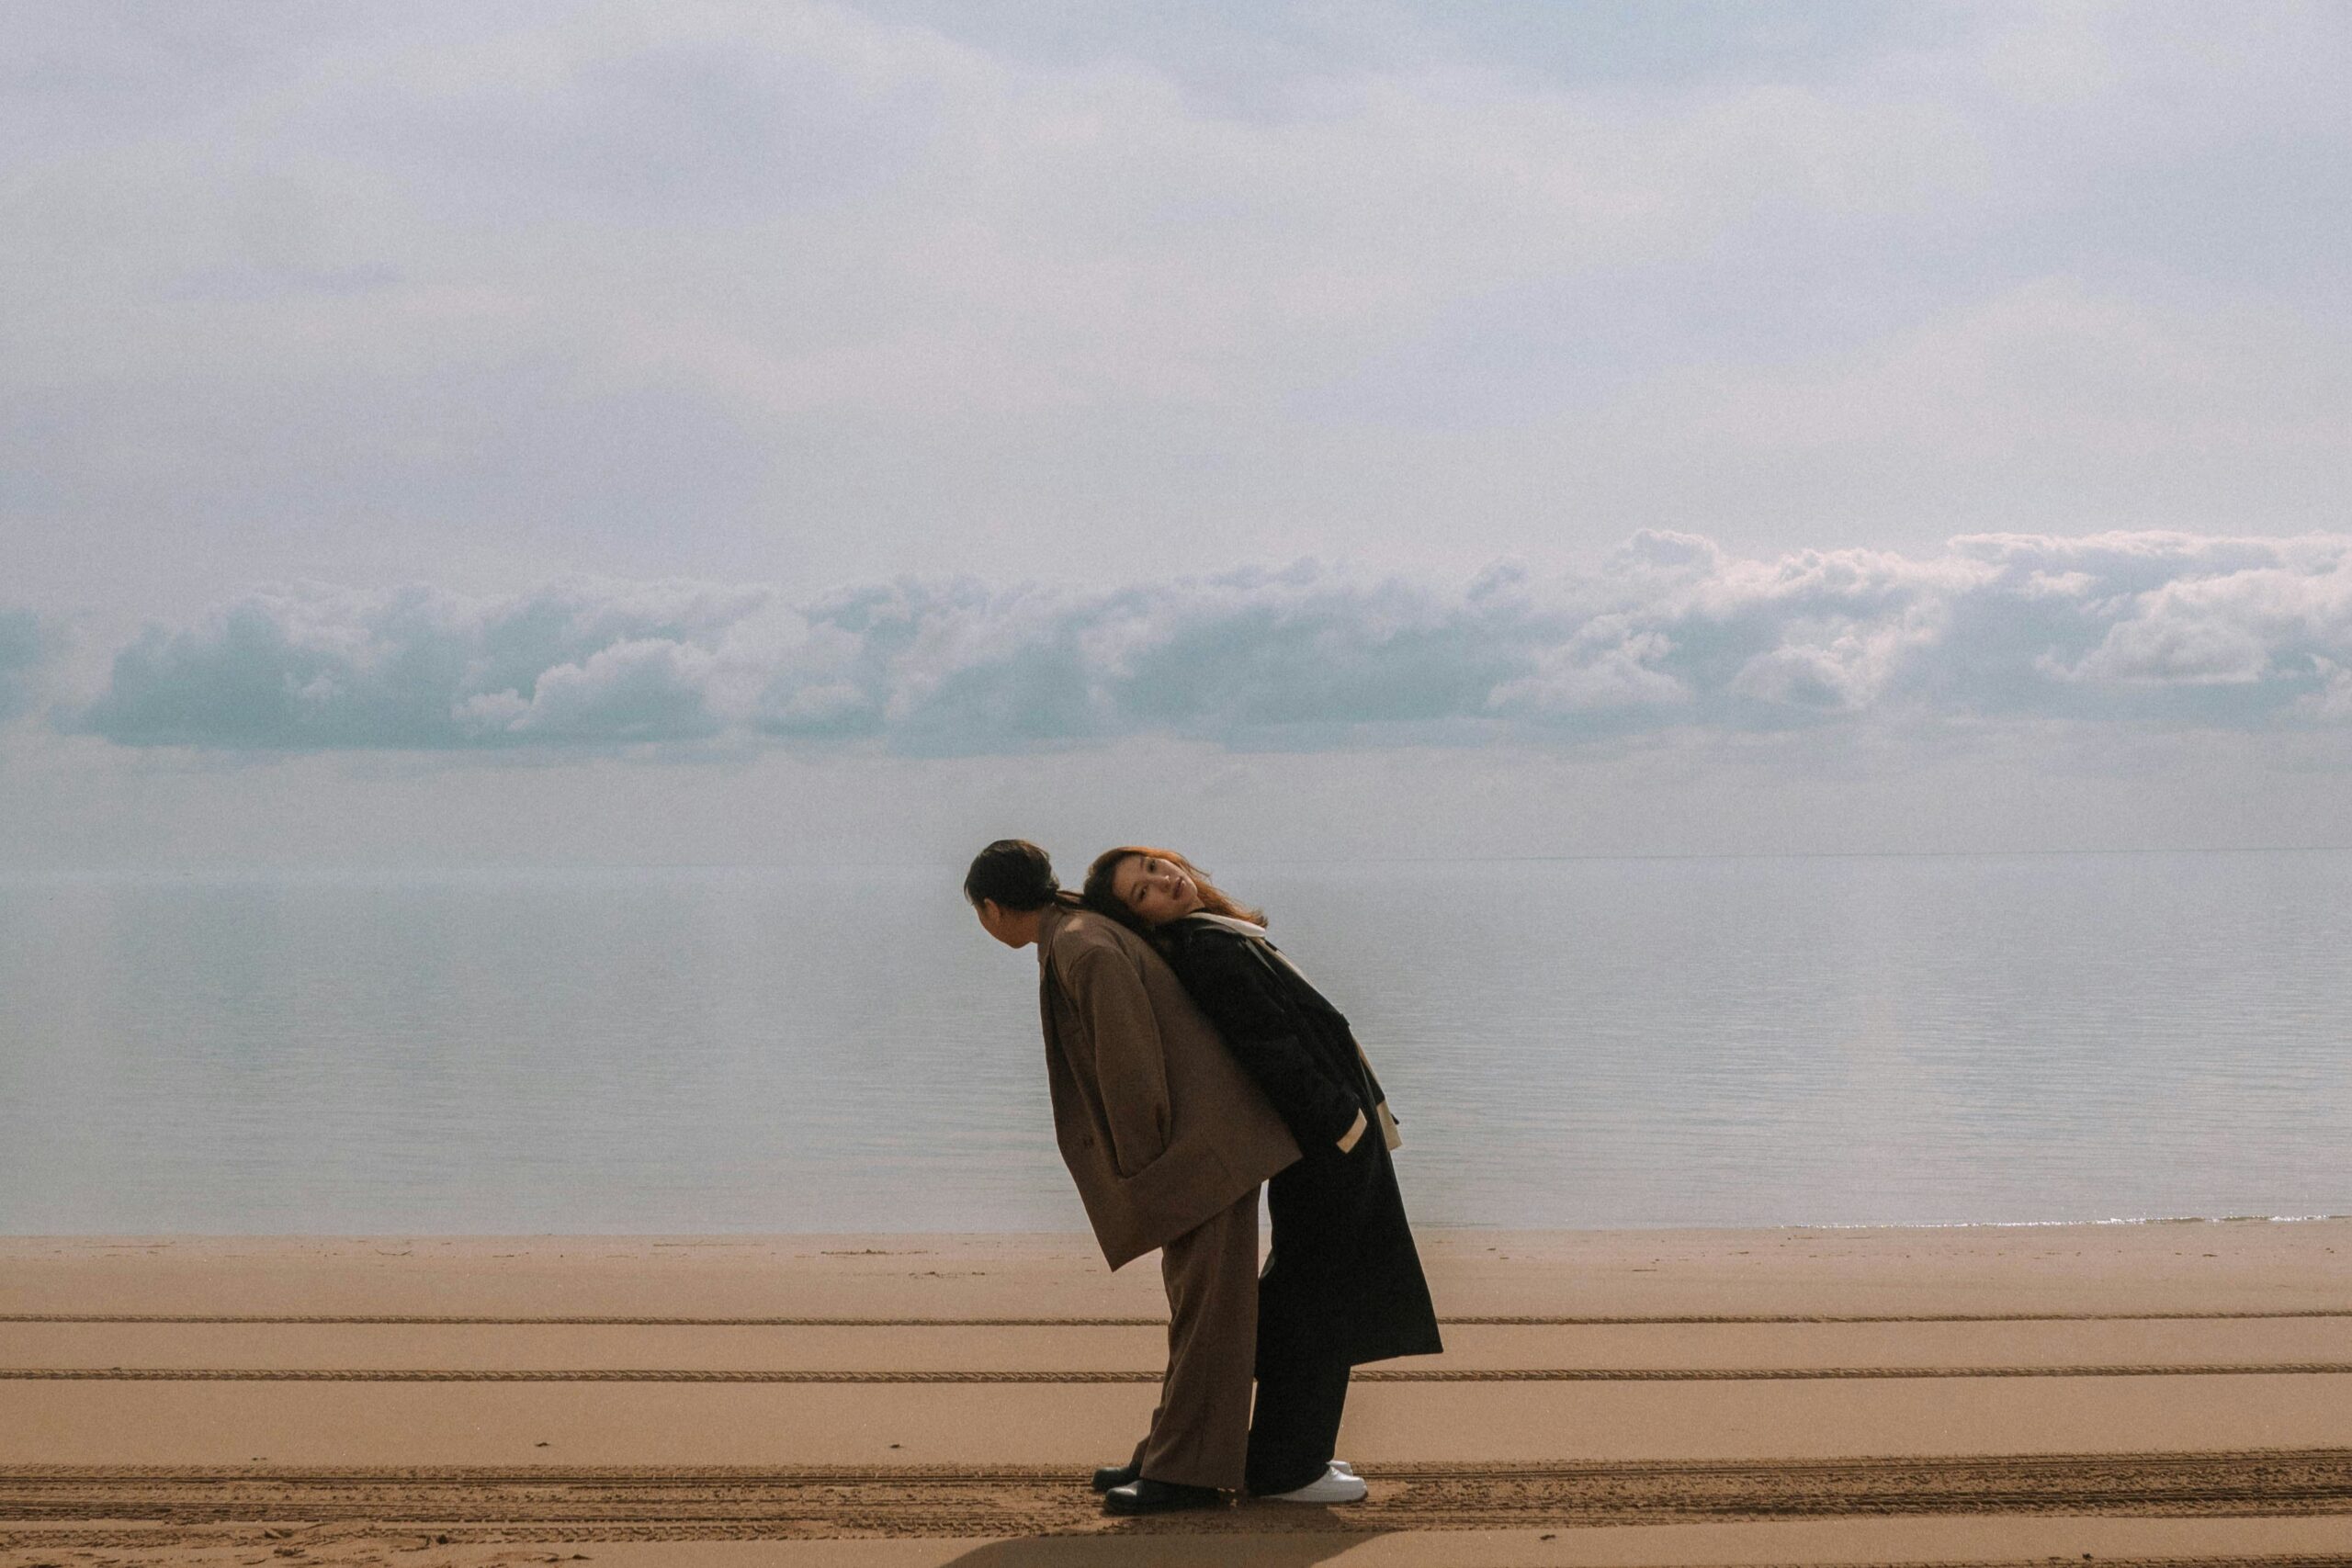 zwei Personen im Sand stehend, die sich aufeinander abstützen. Ist Monogamie wirklich die passende Beziehungsform, die glücklich macht?